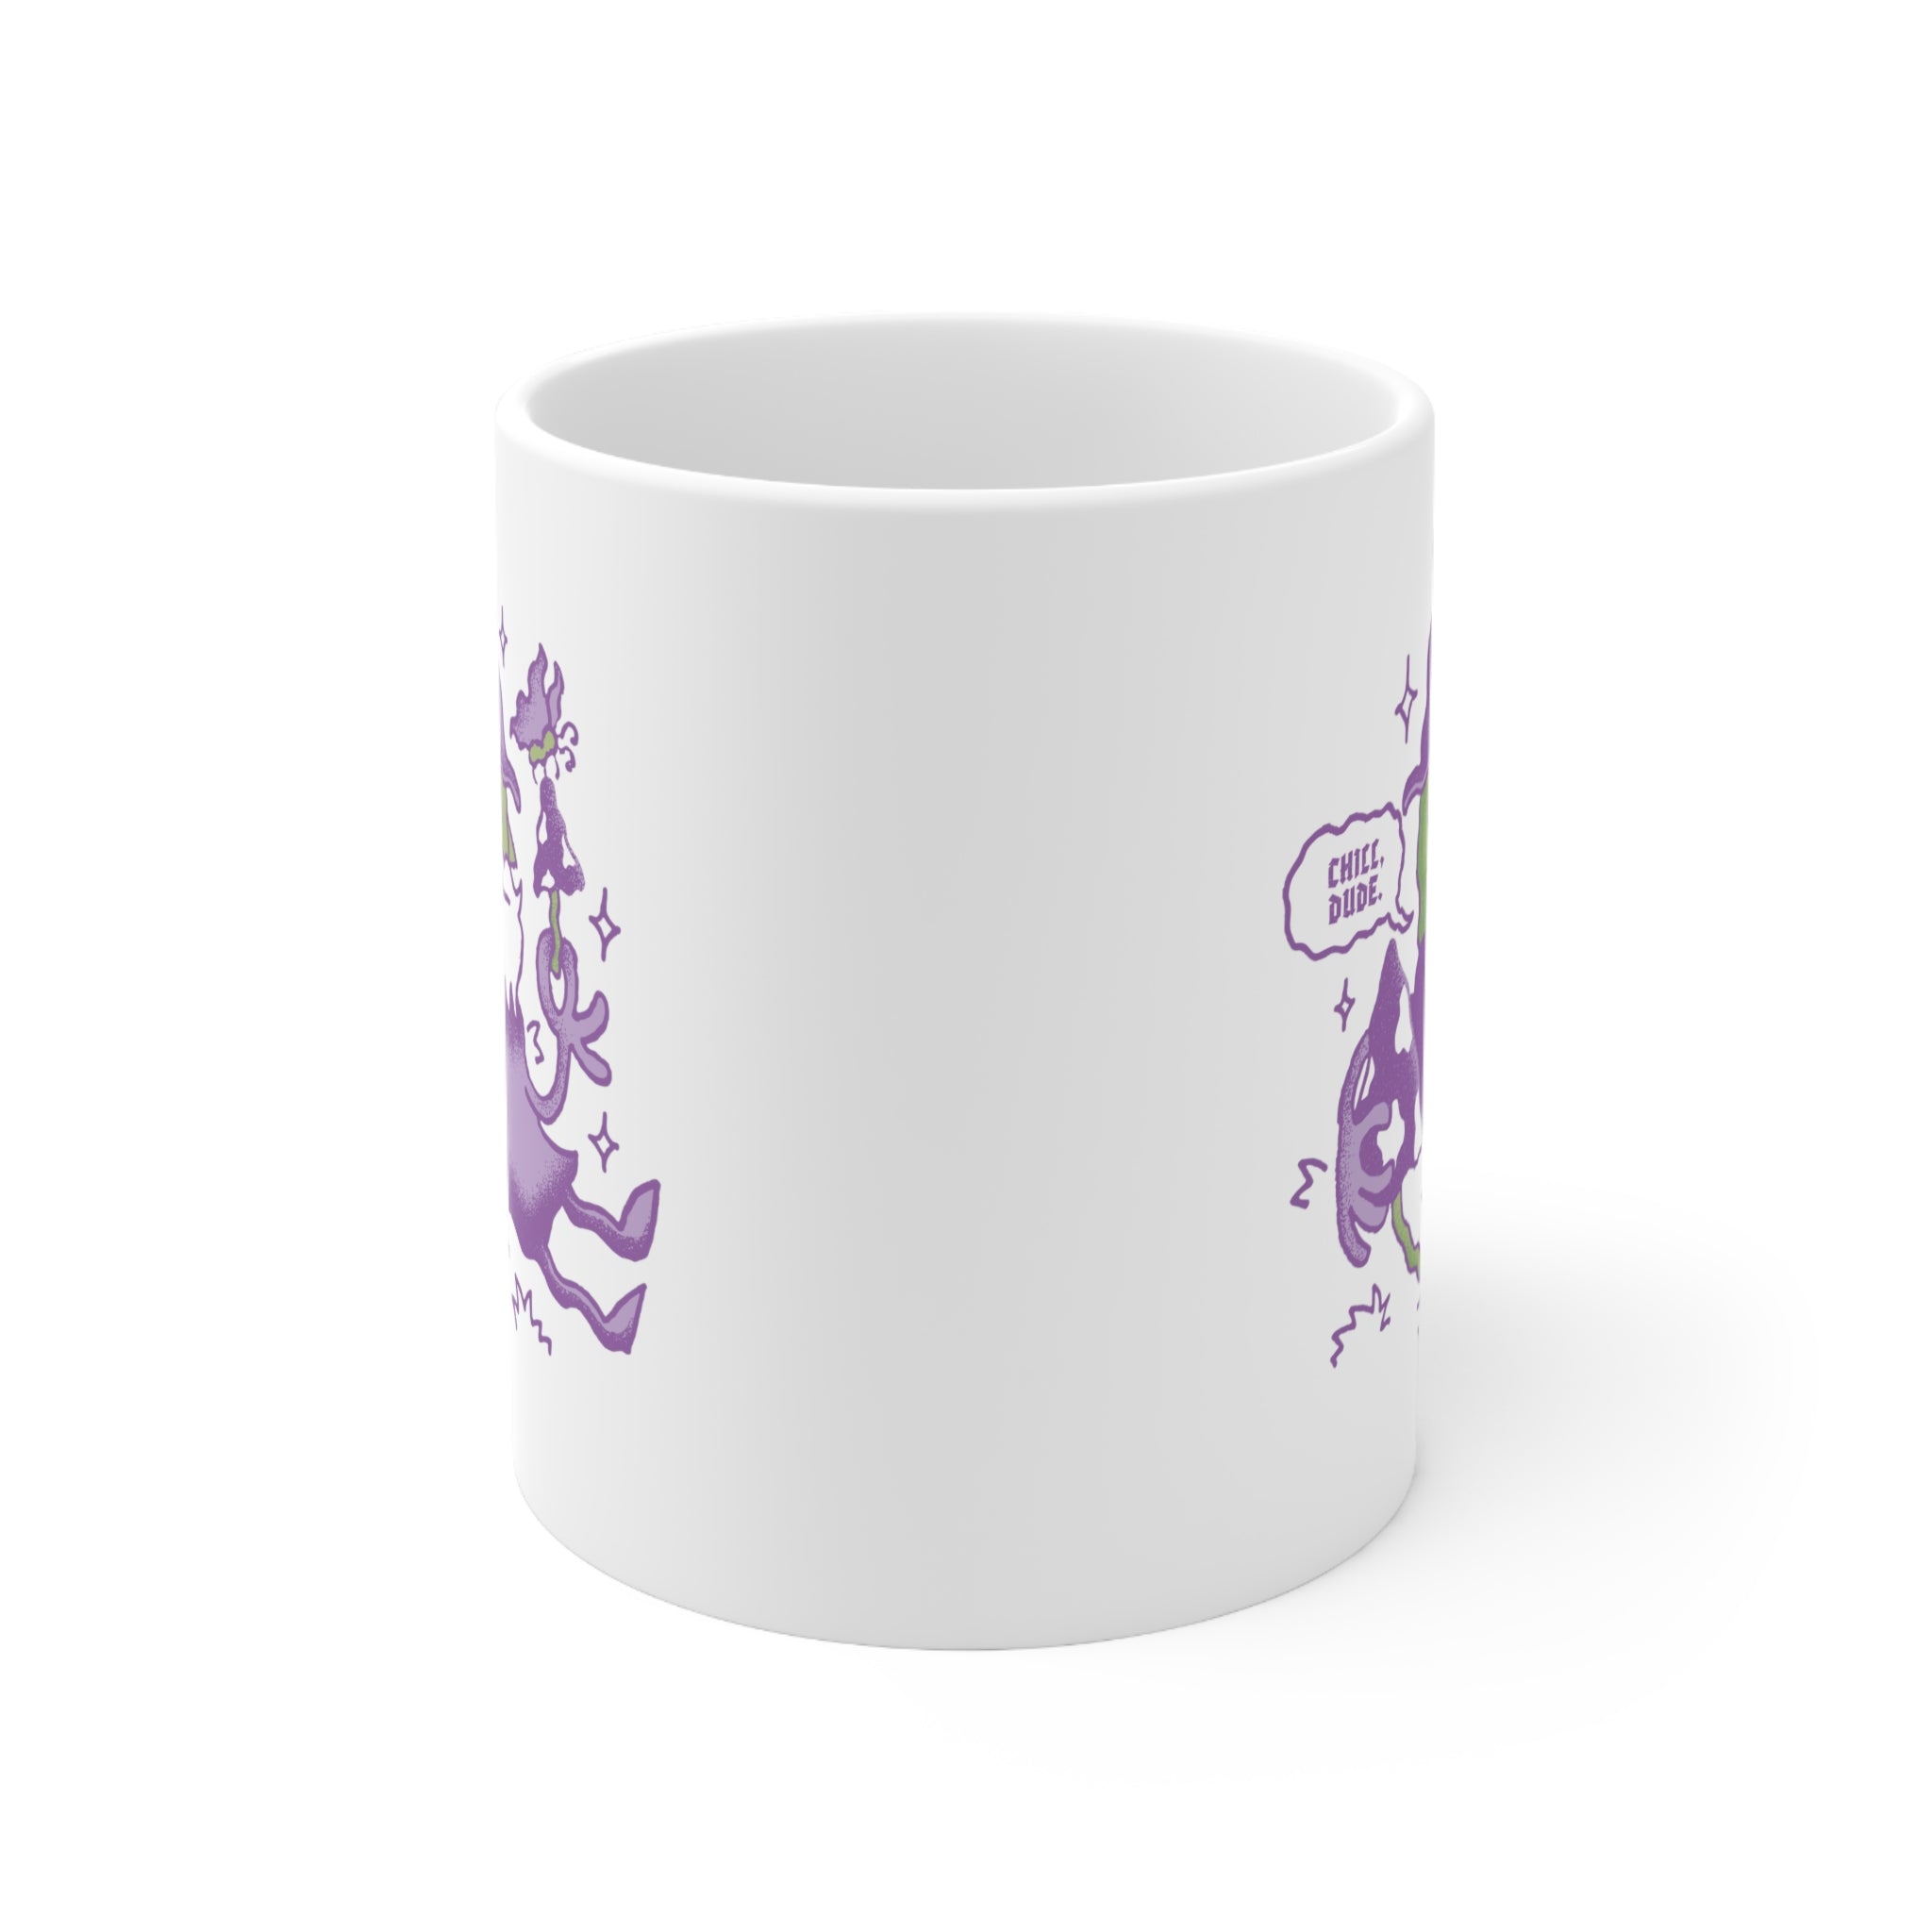 Chill, Dude! | Ceramic Mug 11oz - Mug - Ace of Gnomes - 29712540353691790870